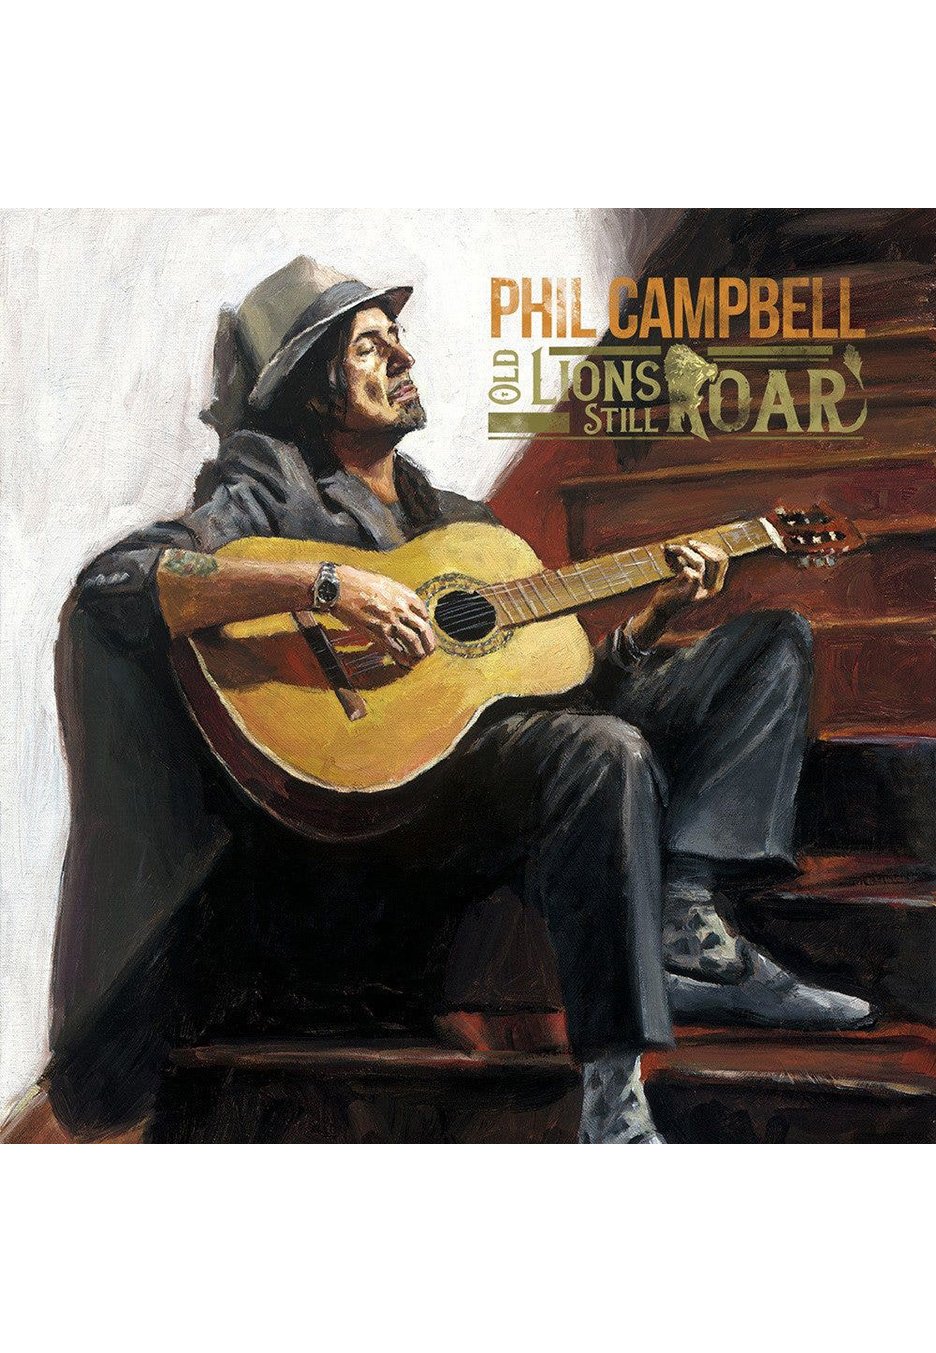 Phil Campbell - Old Lions Still Roar - Vinyl